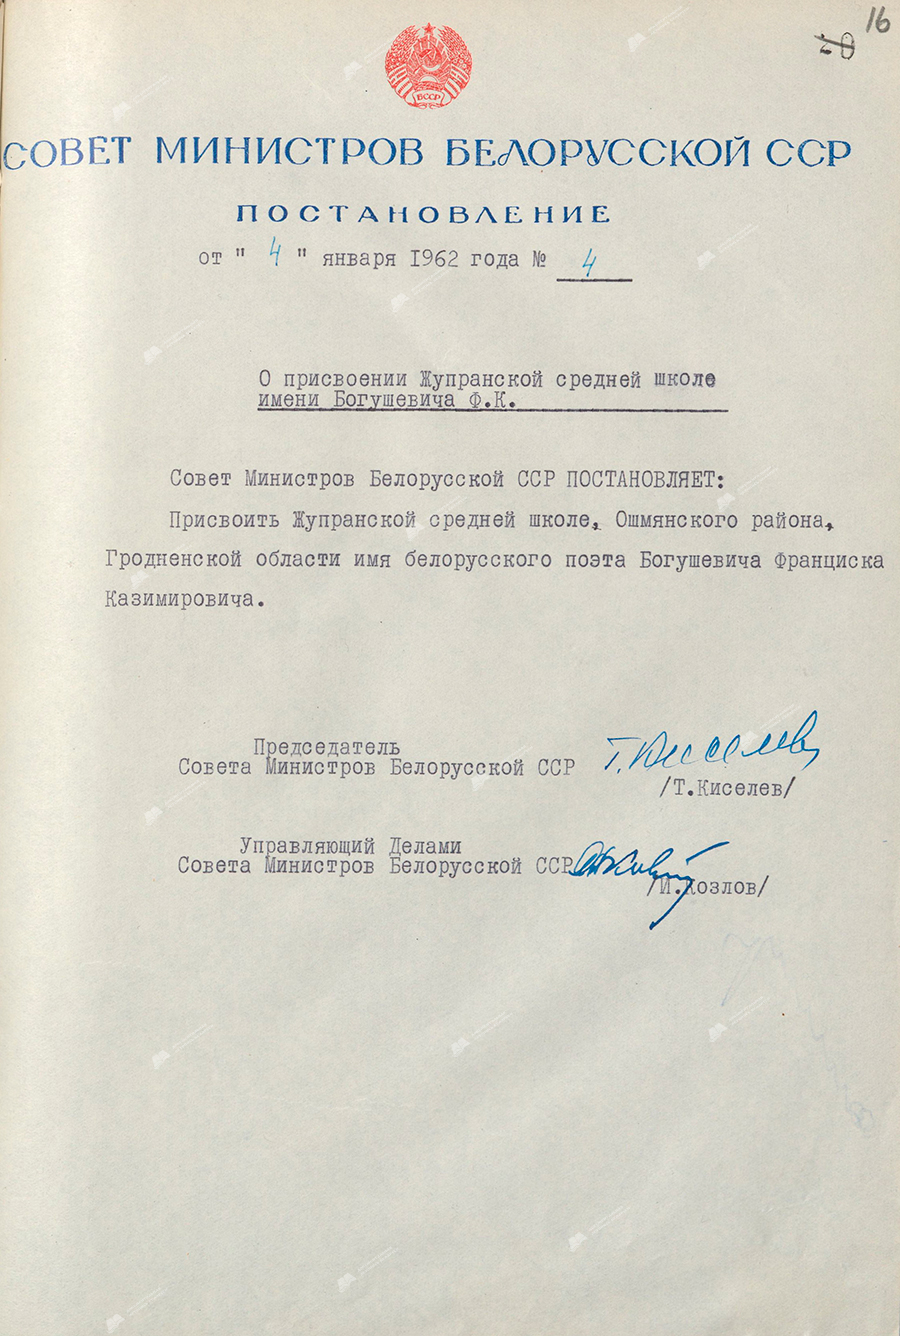 Beschluss Nr. 4 des Ministerrats der BSSR «Über die Benennung der Zhupra-Sekundarschule nach Bogushevich F.K.»-стр. 0